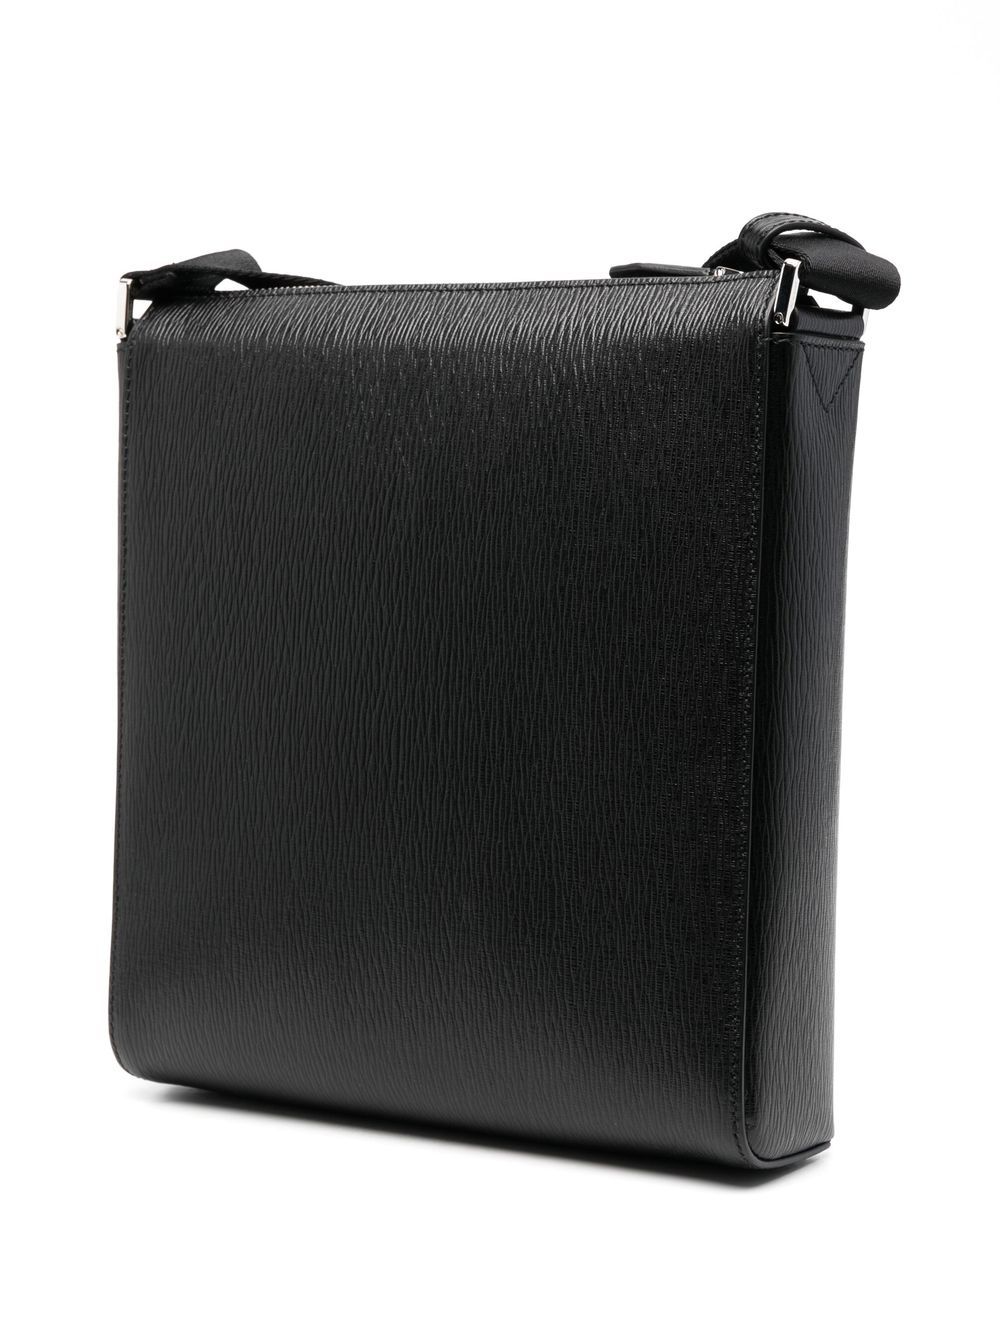 Ferragamo FERRAGAMO- Gancini Leather Crossbody Bag